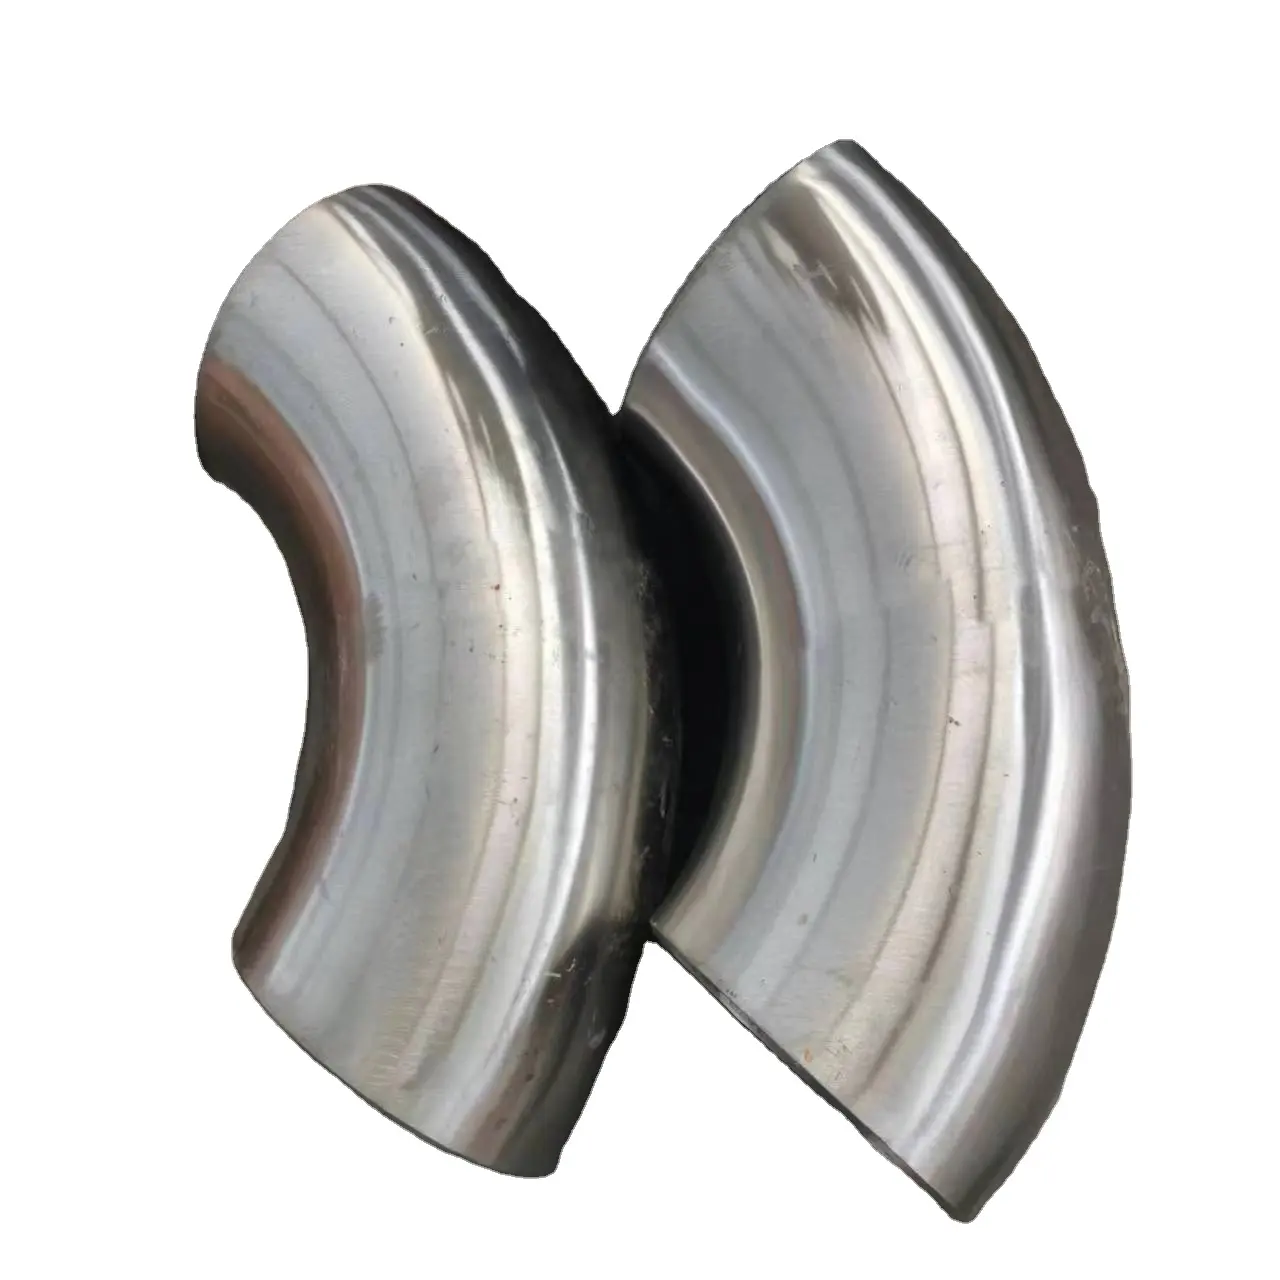 Iyi fiyat hafif çelik boru parçaları 45 derece sch40 sch 80 sch160 tüpler yüksek kaliteli dirsekler